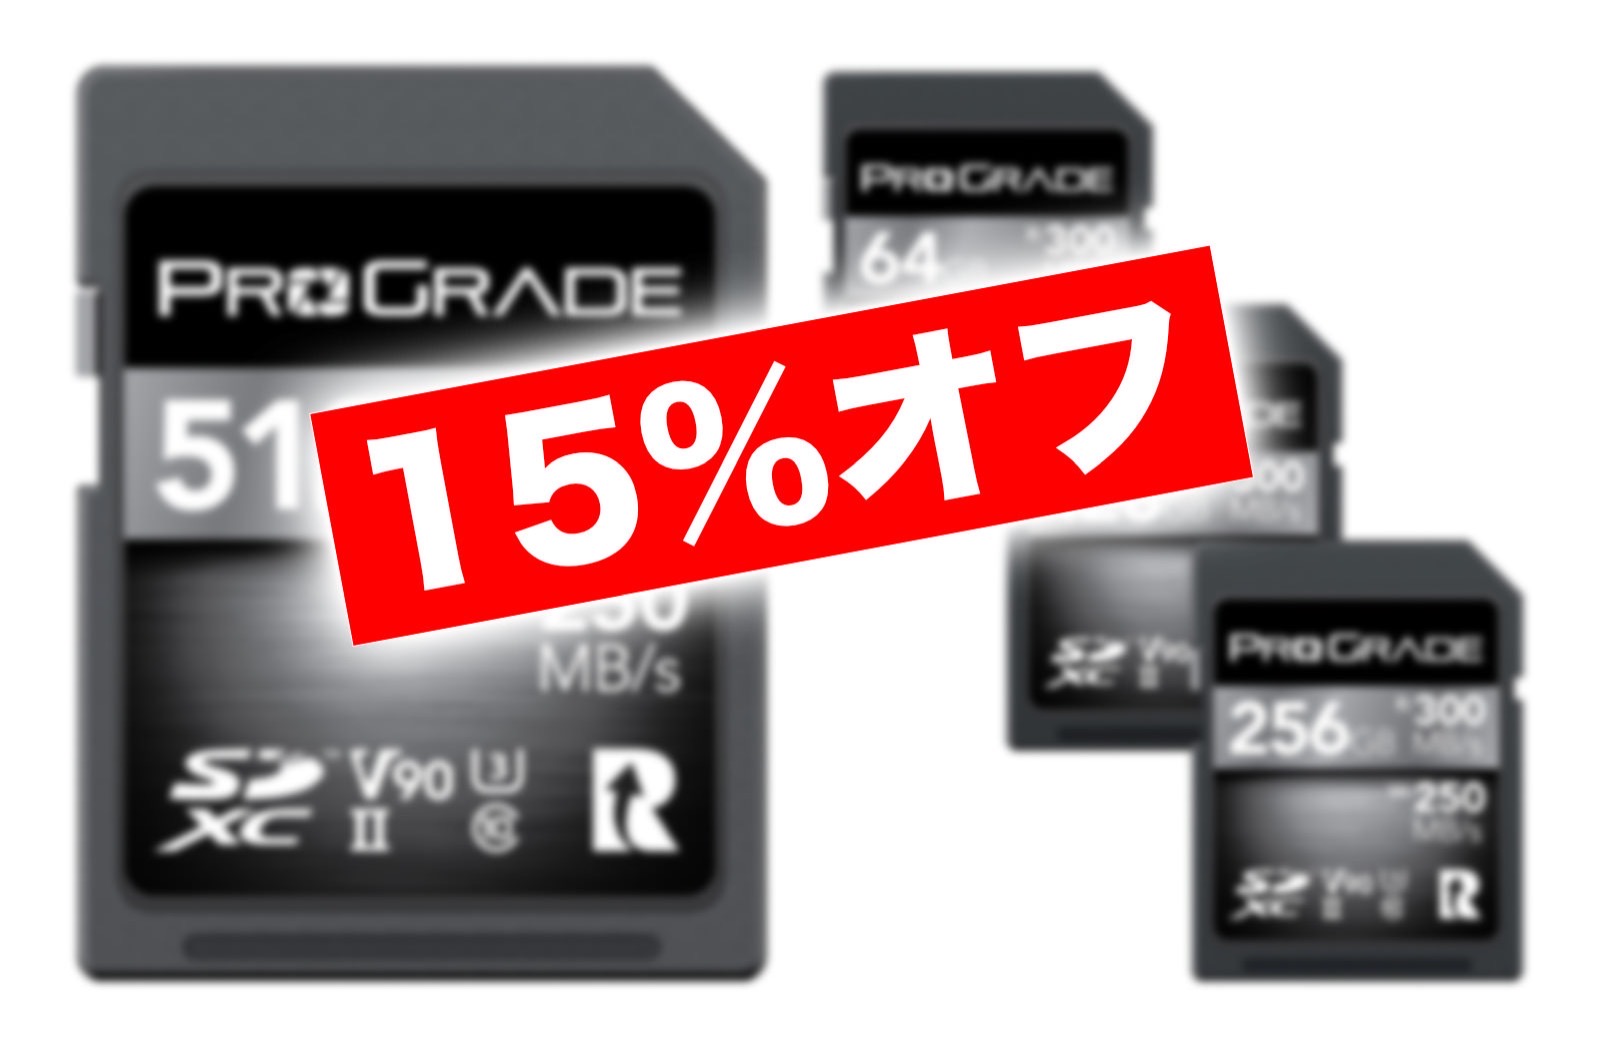 ProGrade 15percent off sale